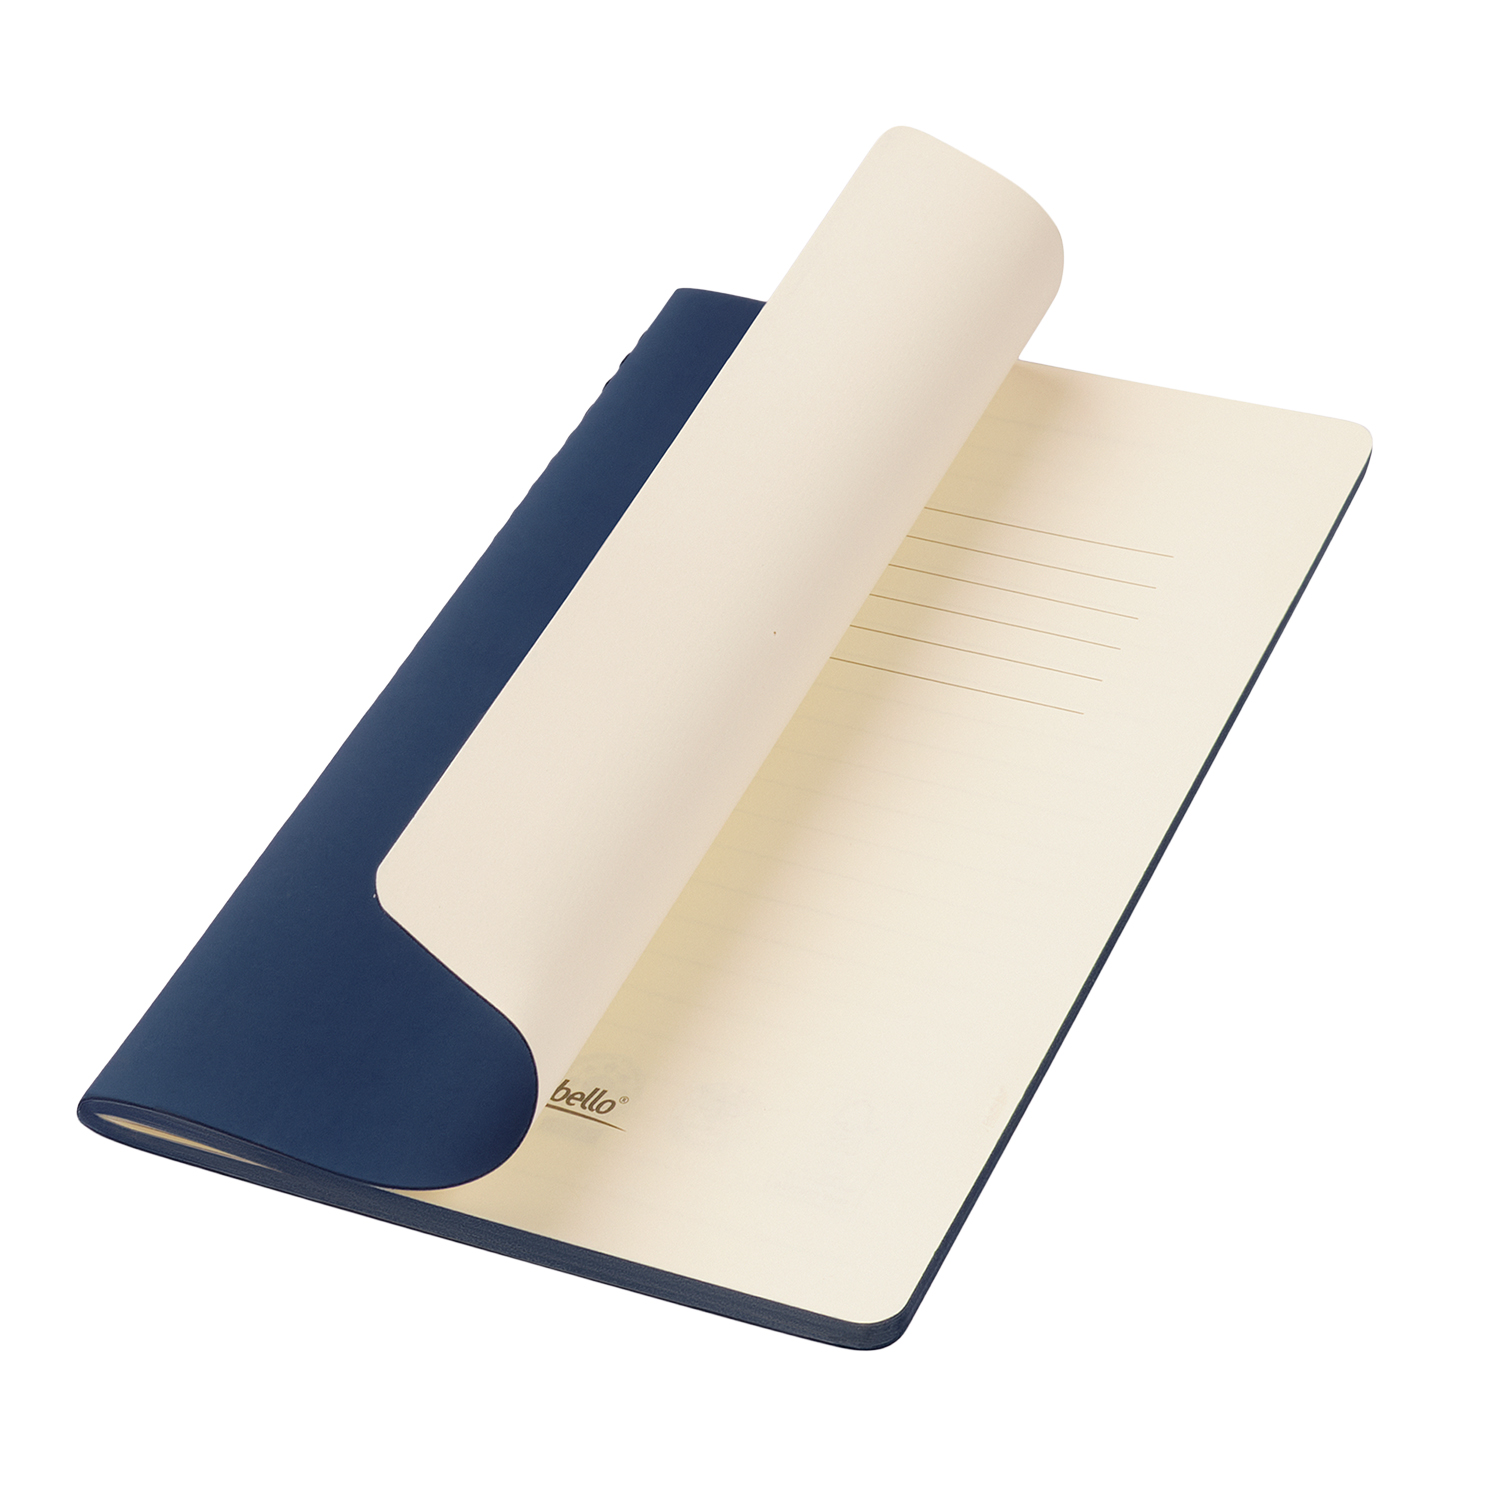 Подарочный набор Medium, синий (шоппер, блокнот, ручка, термобутылка)